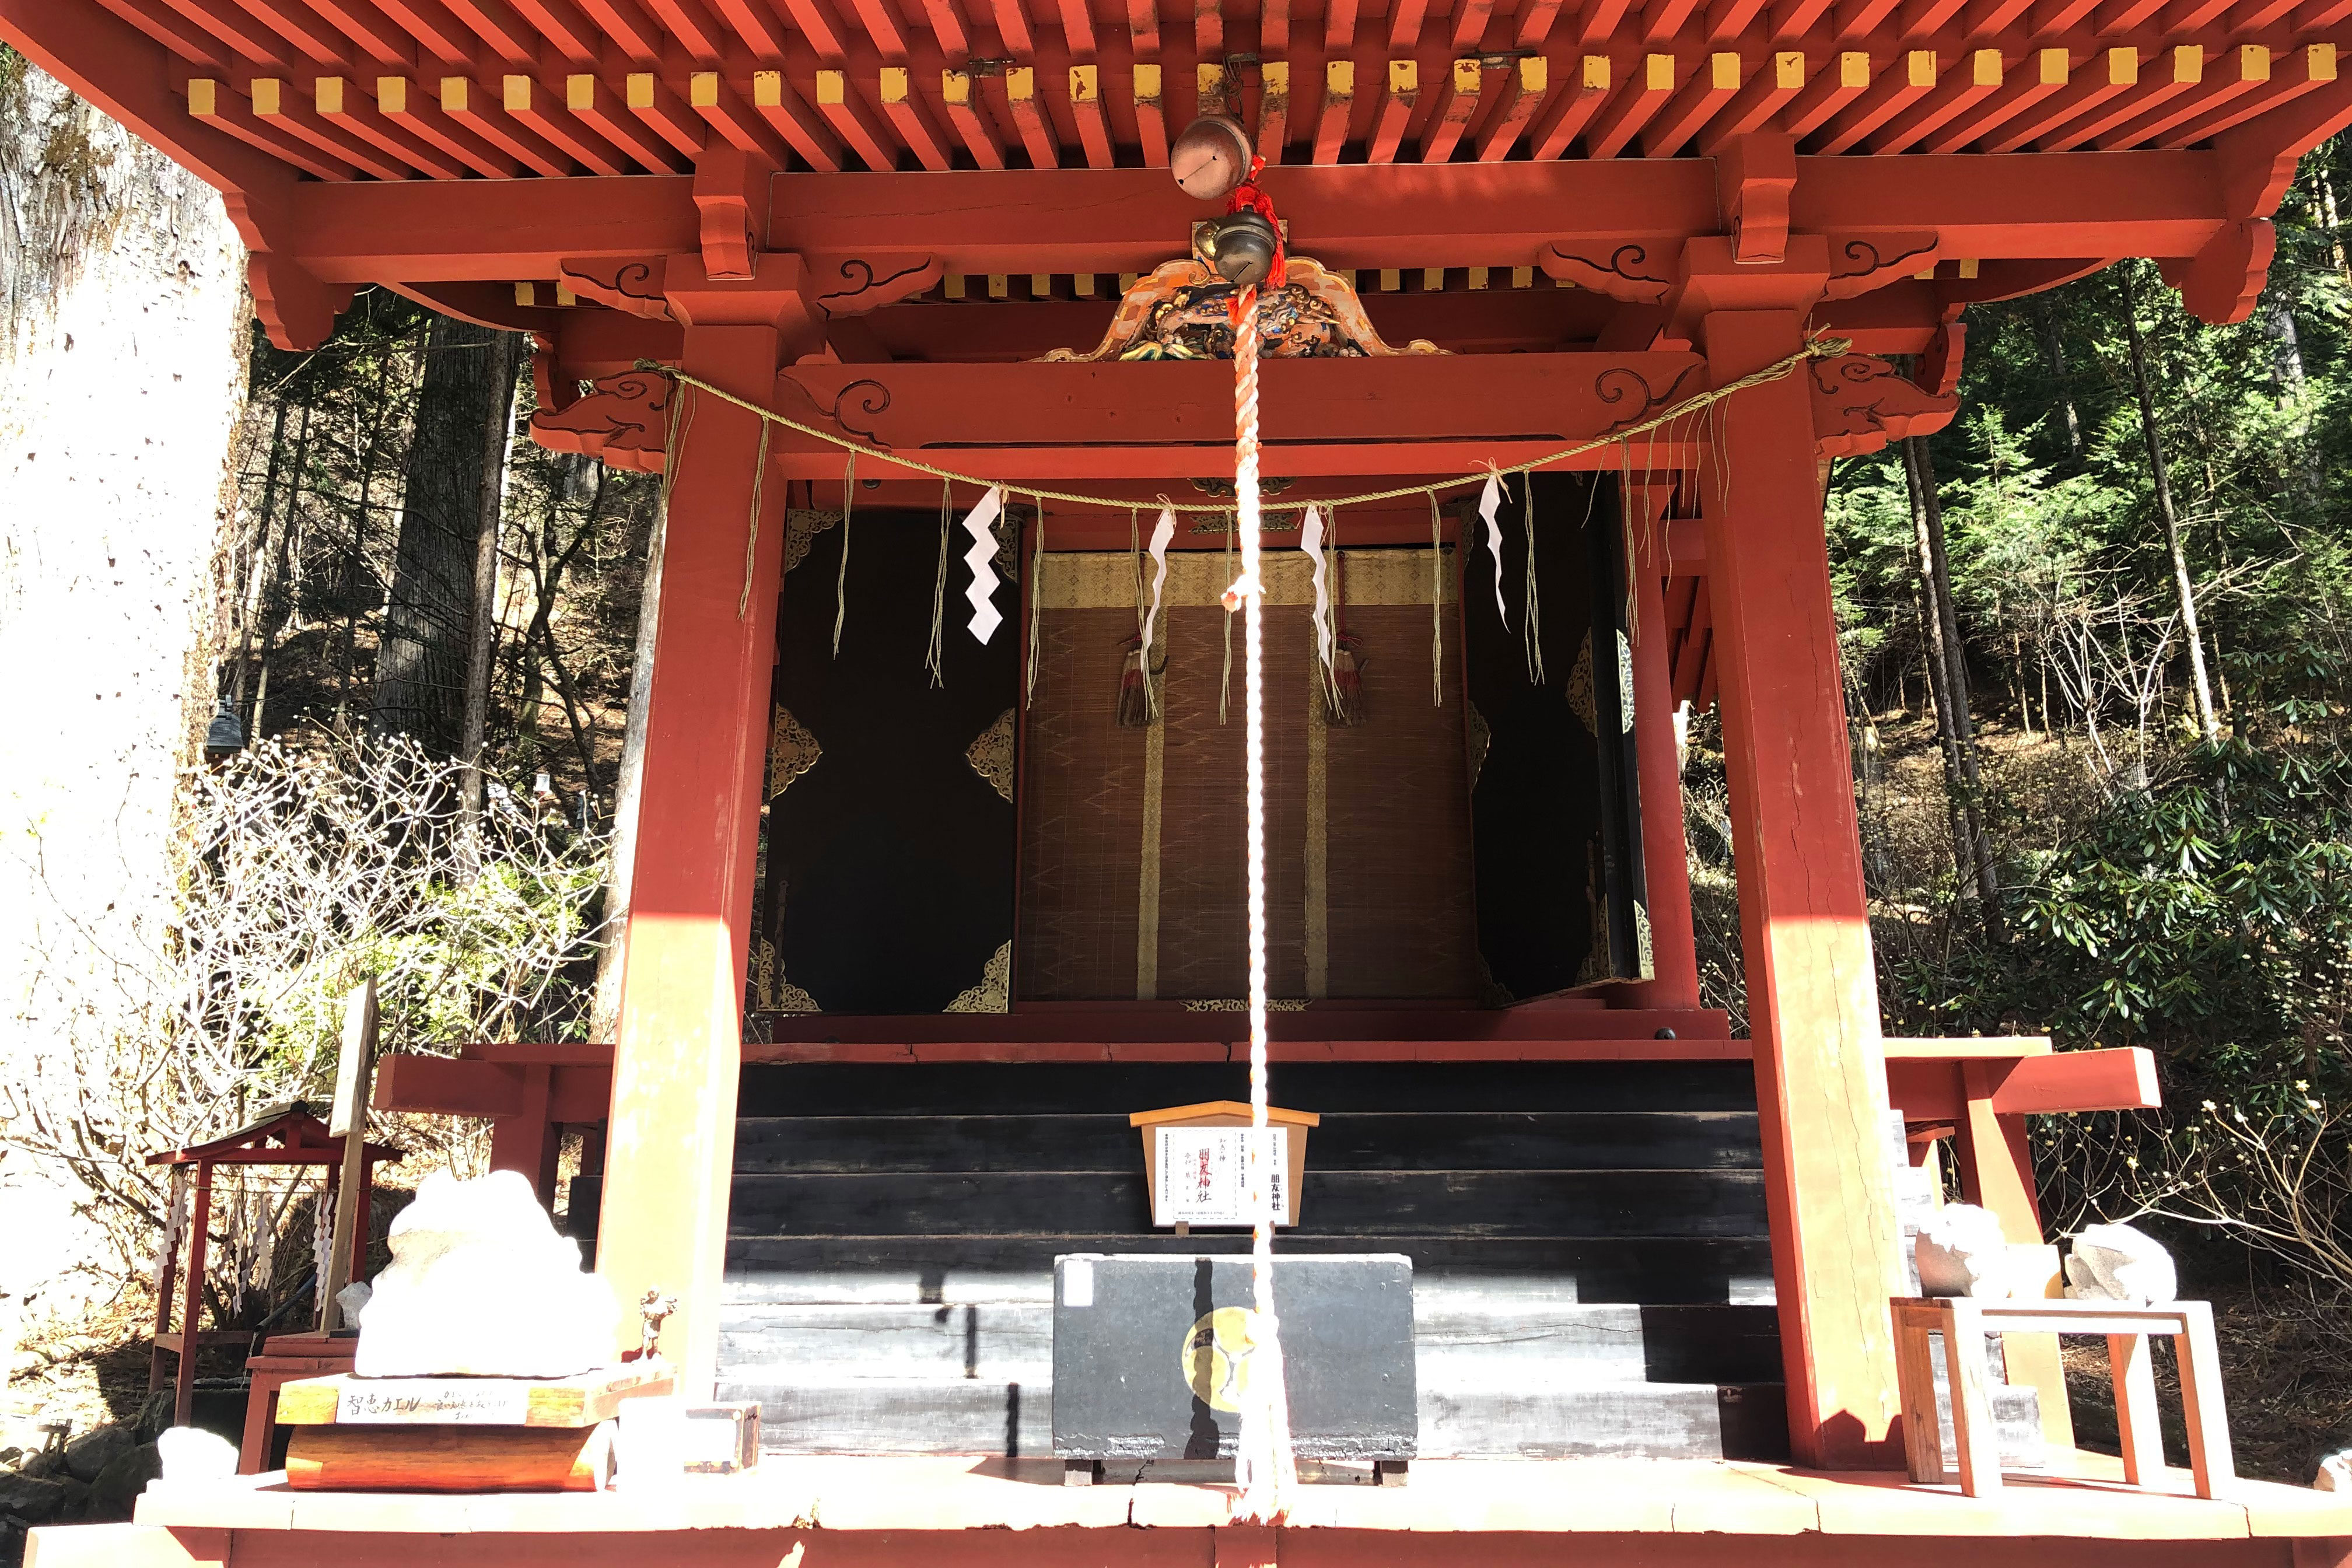 เทพเจ้าซูคูนะบิโกะโนะมิโคโตะของชินโตเป็นเทพเจ้าแห่งการแพทย์และความรู้ซึ่งประดิษฐานอยู่ที่ศาลเจ้ามิโทโมะแห่งนี้ บันทึก “โคจิกิ” ซึ่งเป็นบันทึกเก่าแก่ที่สุดของประวัติศาสตร์ญี่ปุ่นโบราณที่รวบรวมเป็นรายลักษณ์อักษรครั้งแรกในปี ค.ศ. 712 บันทึกไว้ว่าซูคูนะบิโกะโนะมิโคโตะได้ช่วยเหลือโอนามุจิโนะมิโคโตะในการขึ้นปกครองญี่ปุ่น ซึ่งโอนามุจิโนะมิโคโตะเป็นหนึ่งในเทพเจ้าหลักที่ประดิษฐานอยู่ที่ศาลเจ้านิกโกฟูตาระซังนั่นเอง<br /><br />ถึงแม้ว่าจะยังไม่รู้อย่างแน่ชัดถึงอายุของศาล แต่อ่างน้ำหินที่ใช้สำหรับการชำระล้างมือนั้นได้ถูกจารึกด้วยตัวอักษรจีนระบุปี ค.ศ. 1753 จากสิ่งนี้จึงคาดคะเนกันว่าศาลเจ้ามิโทโมะนั้นมีประวัติศาสตร์ความเป็นมาอย่างน้อย 250 ปีมาแล้ว ผู้ที่เดินทางมาสักการะนั้นจะล้างมือจากอ่างน้ำหินที่ตั้งไว้ด้านหน้าศาลเจ้าก่อนการเข้าสักการะ การปฏิบัติเช่นนี้เชื่อว่าเป็นการชำระล้างผู้มากราบไหว้ให้บริสุทธิ์และแสดงถึงความเคารพนับถือต่อเทพเจ้าชินโต